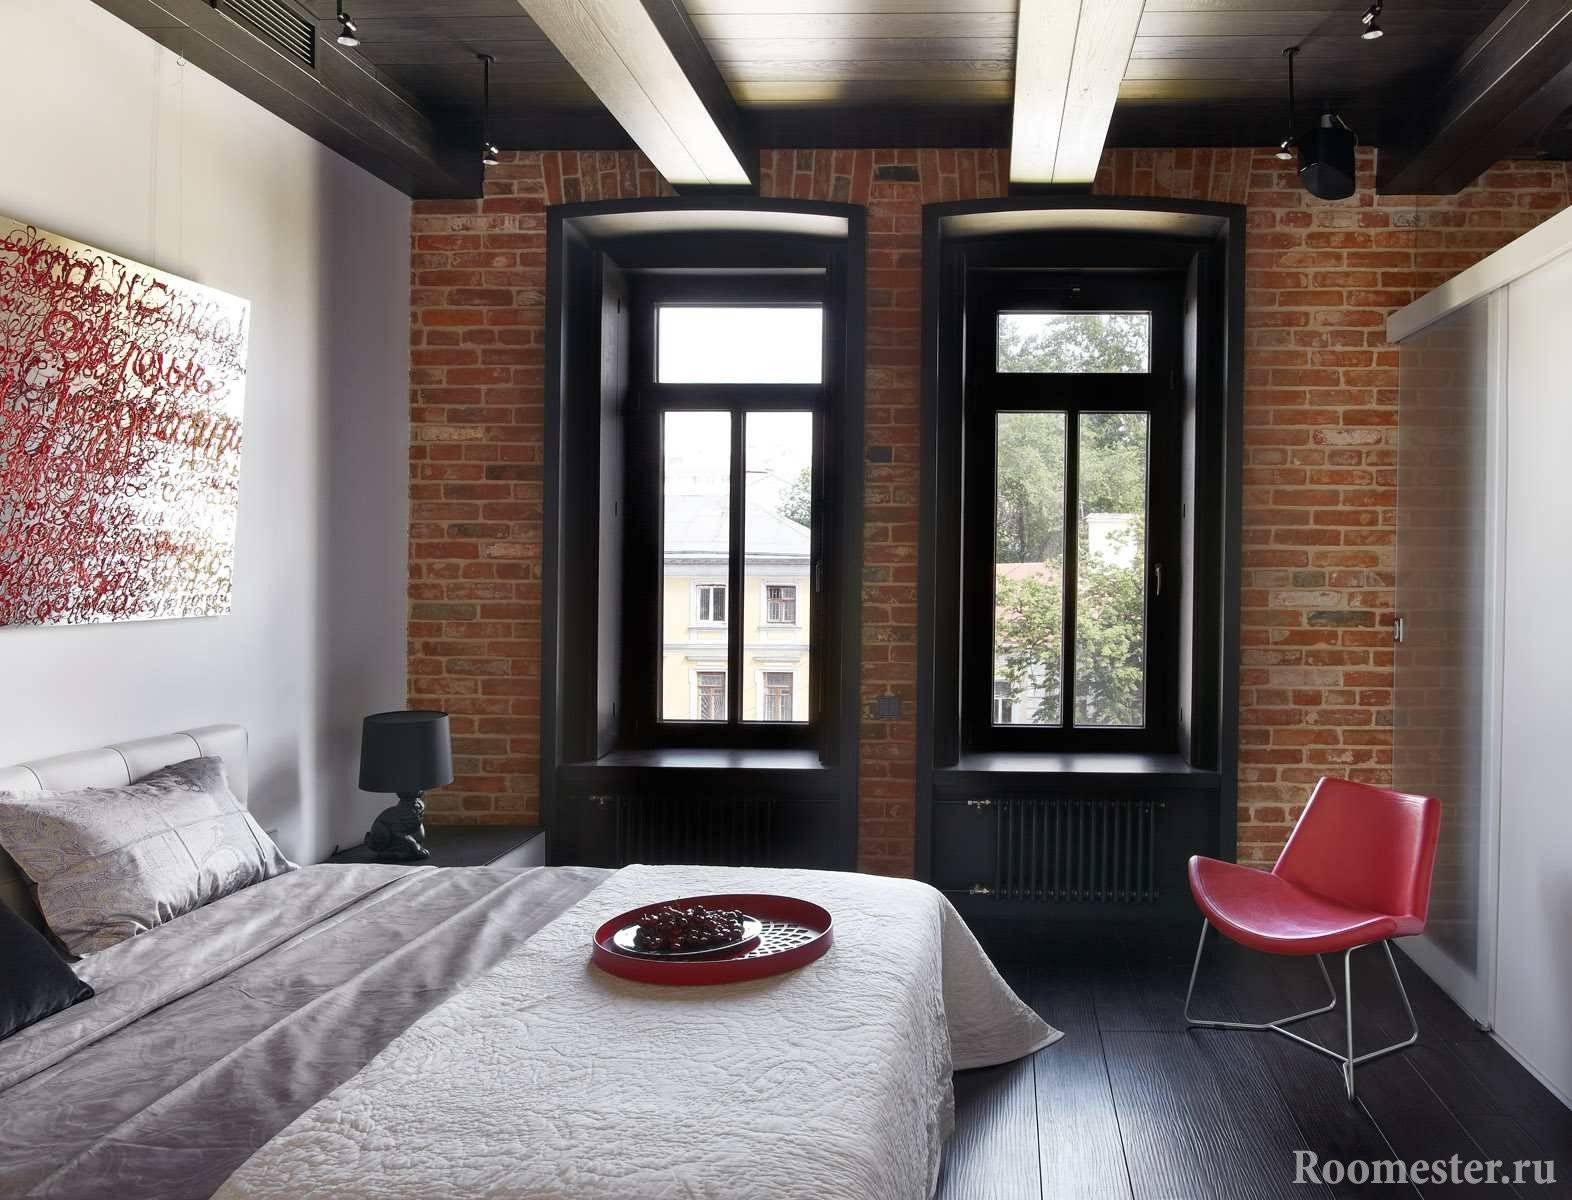 Дизайн маленькой спальни 12 кв. м фото: реальный интерьер, идеи метров комнаты, проект классического ремонта